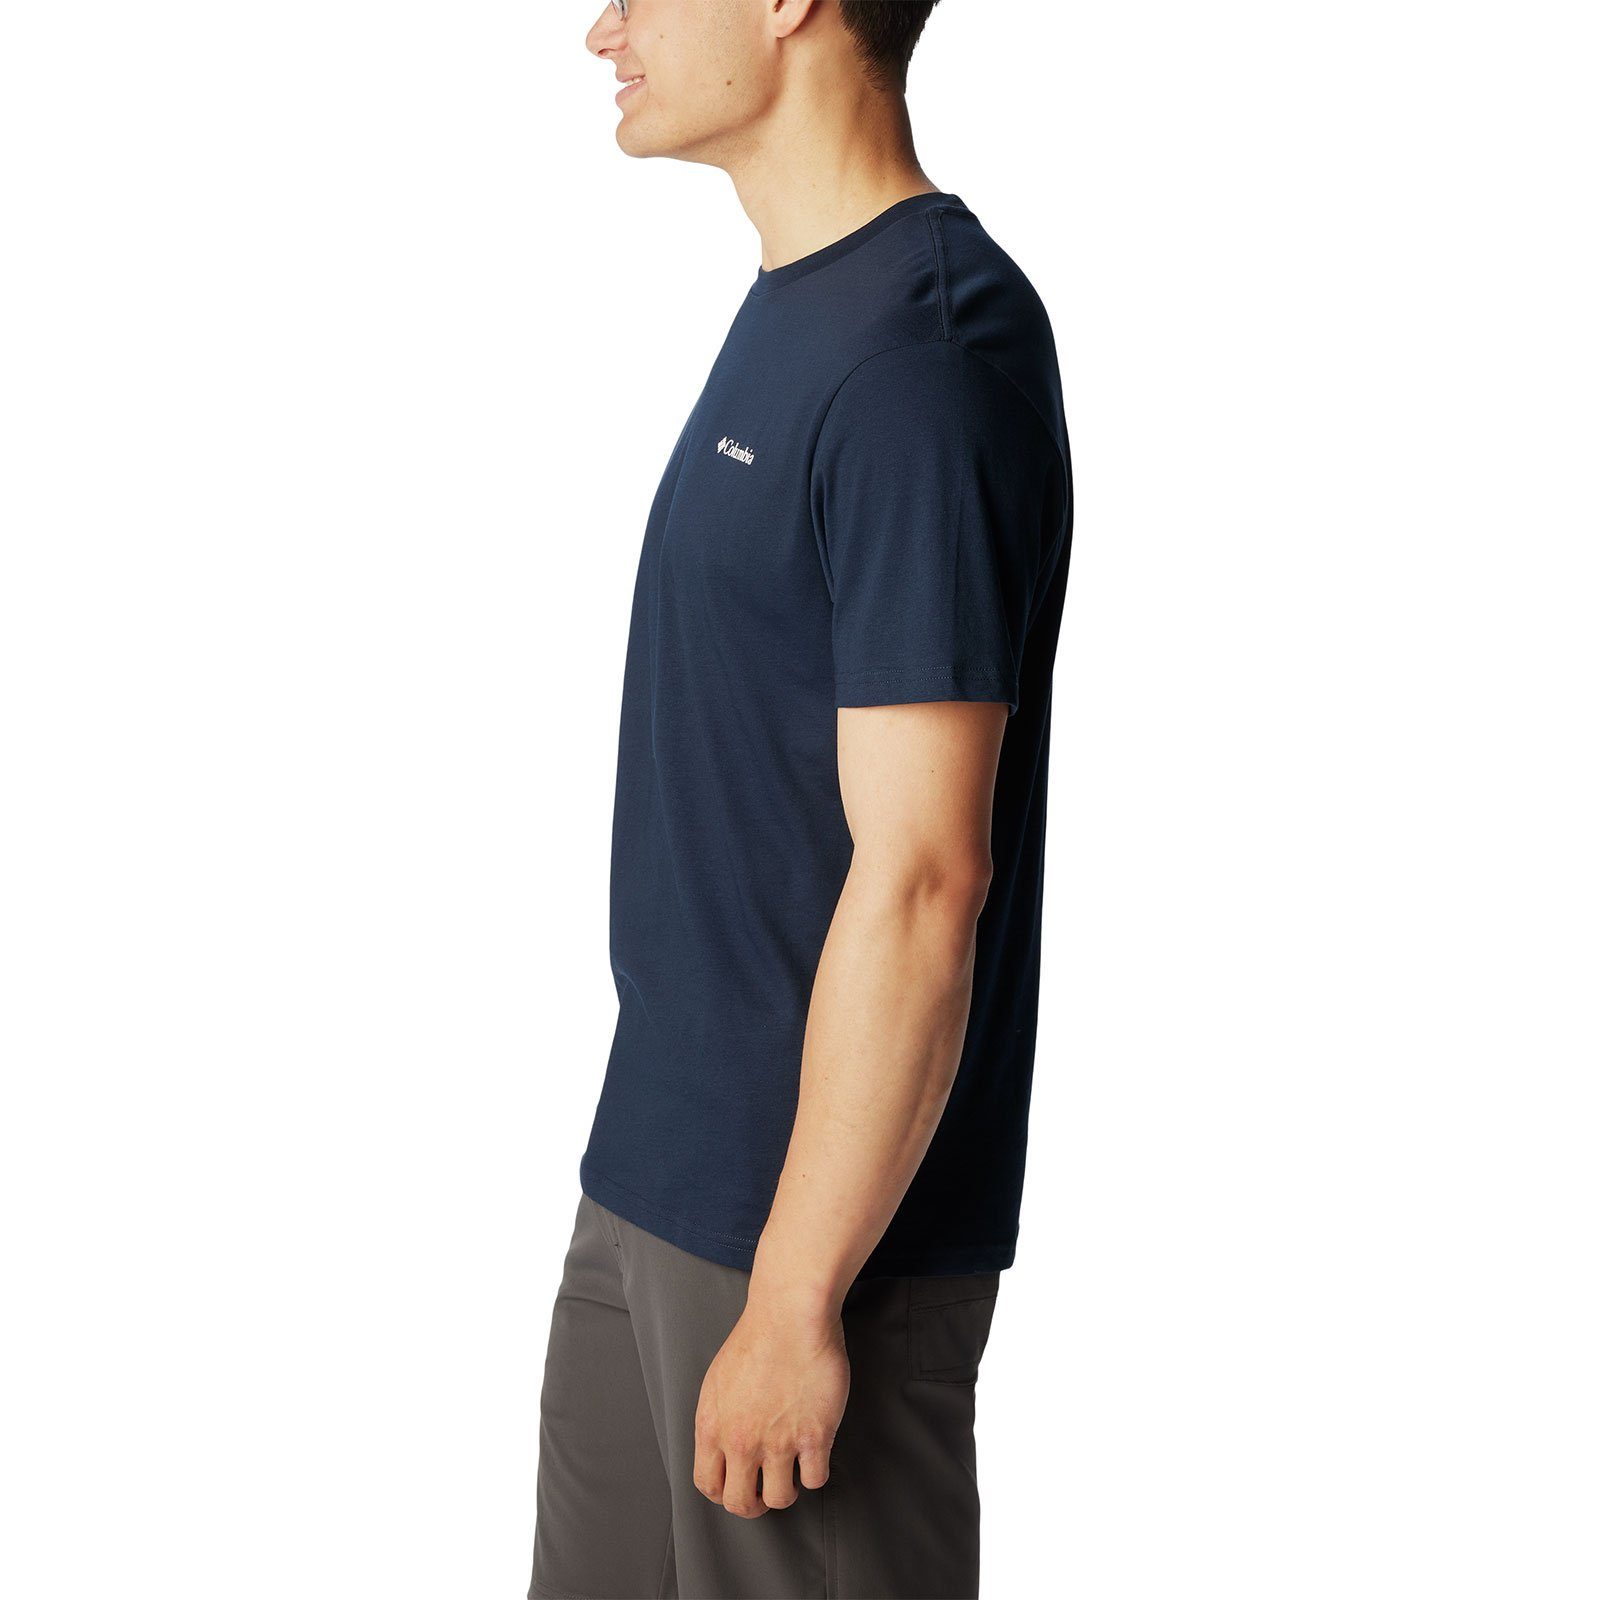 Columbia Kurzarmshirt Basic Logo™ T-Shirt navy mit Rundhalsausschnitt 474